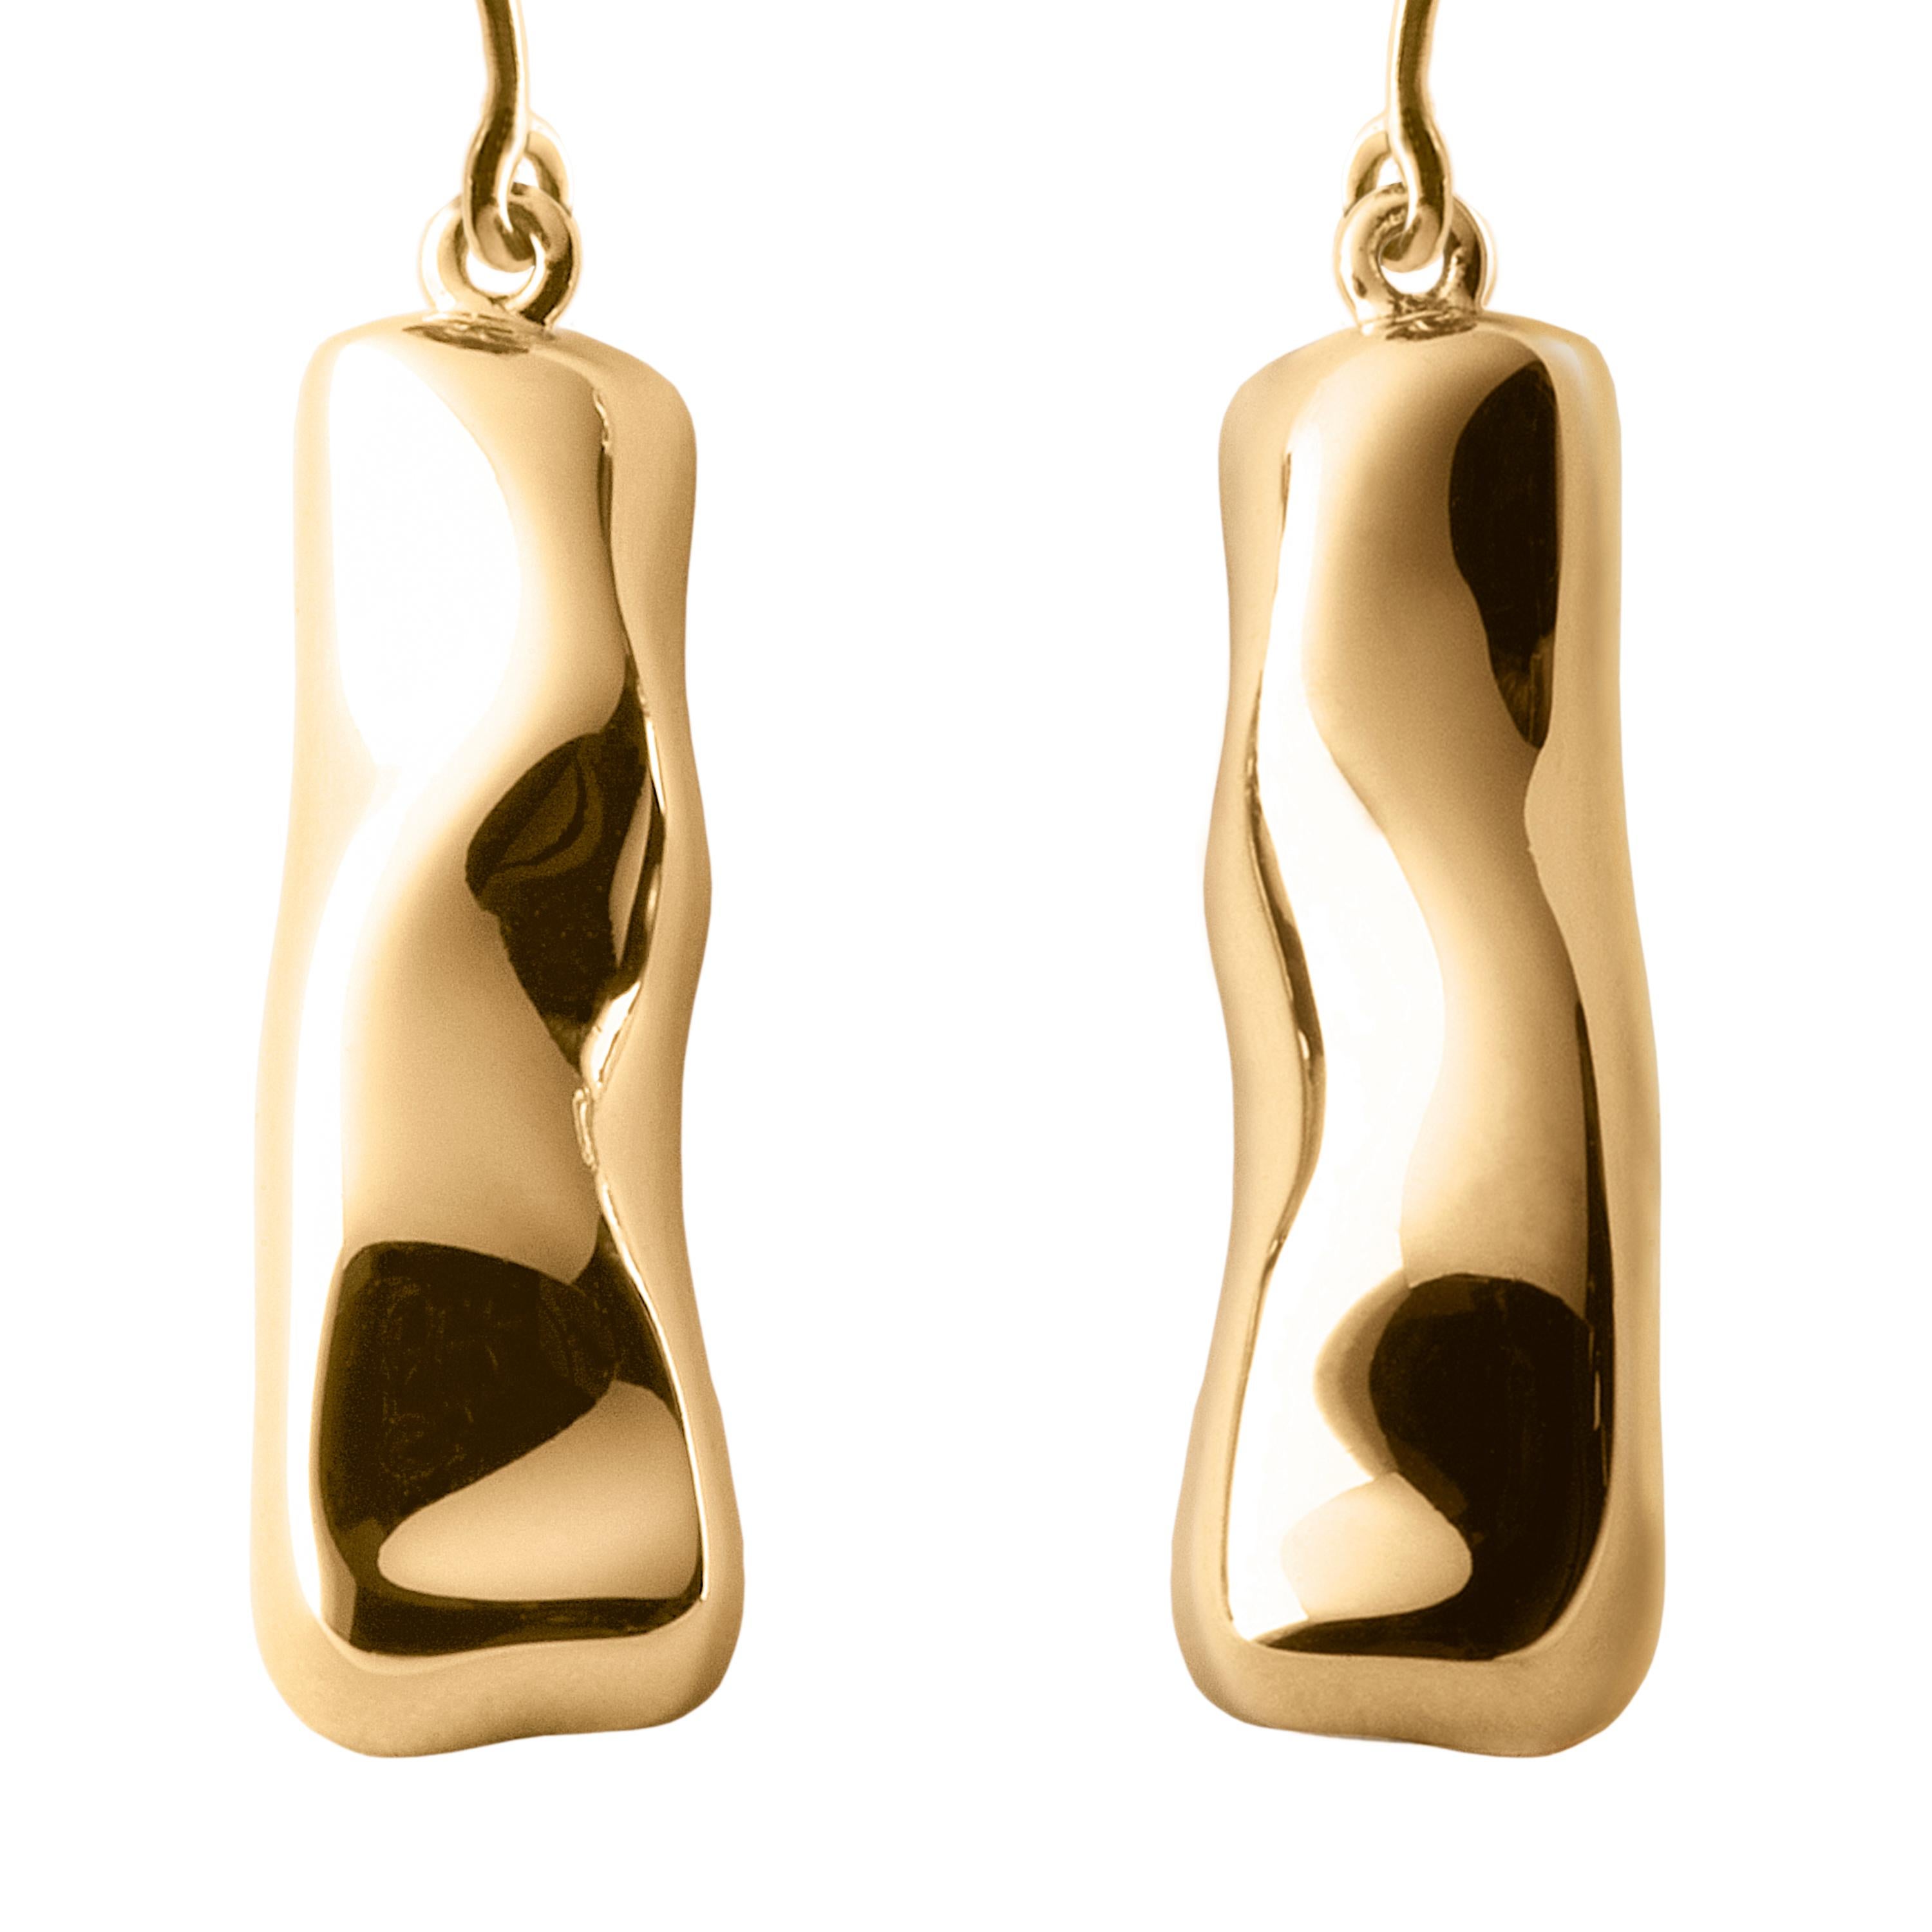 Réalisées à la main dans l'atelier milanais de Nathalie Jean en édition limitée, les boucles d'oreilles pendantes Mercure sont en or rosé 18 carats, une couleur chaude et sophistiquée proche de l'or jaune. Petites sculptures délicates aux formes